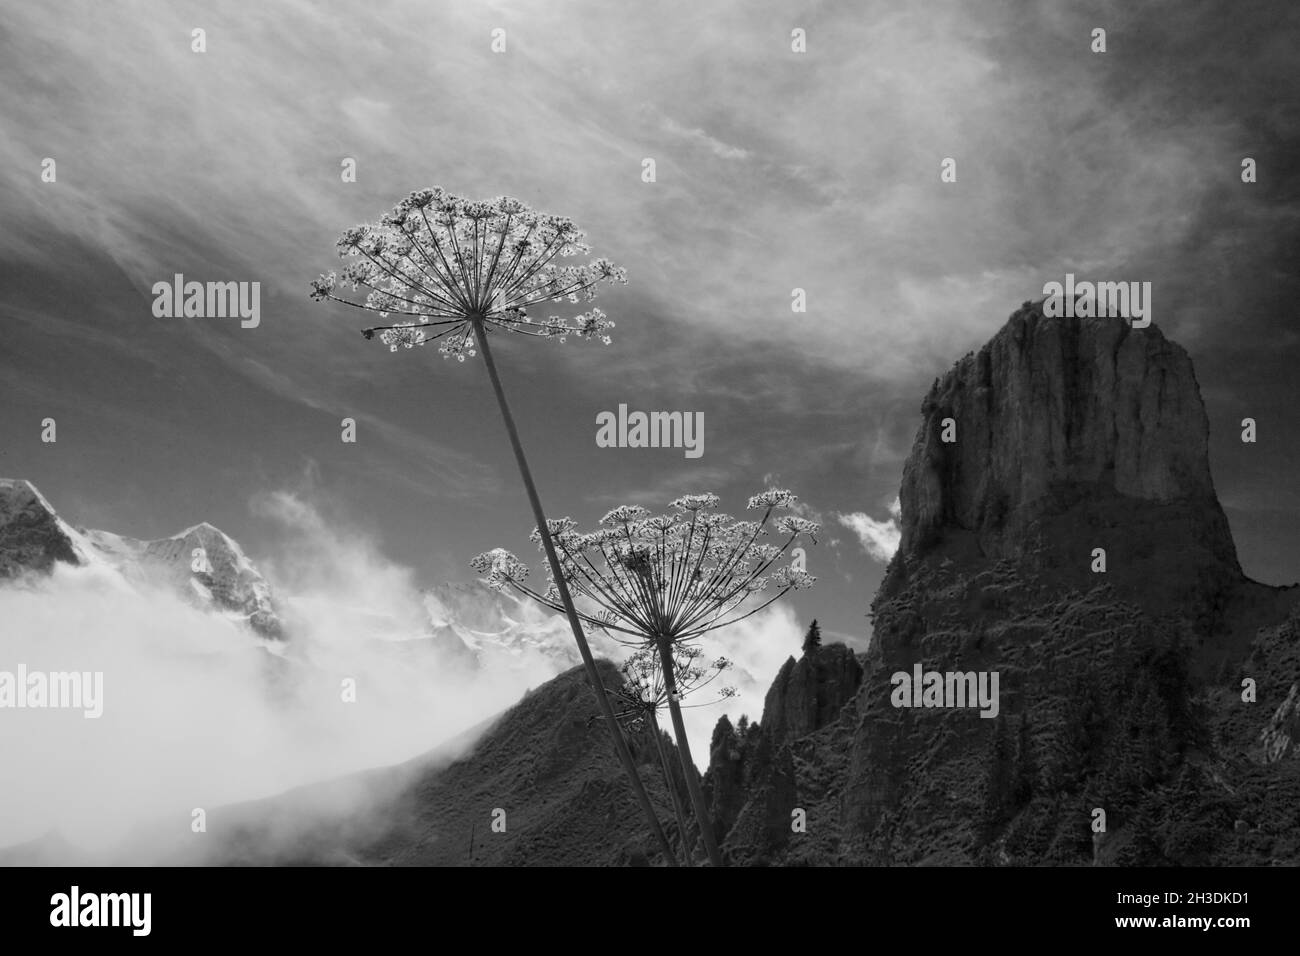 Das Gummihorn auf der Schynige Platte mit schneebedeckten Gipfeln des Eiger, Mönch und Jungfrau in der Ferne: Berner Oberland, Schweiz. S/W-Version Stockfoto